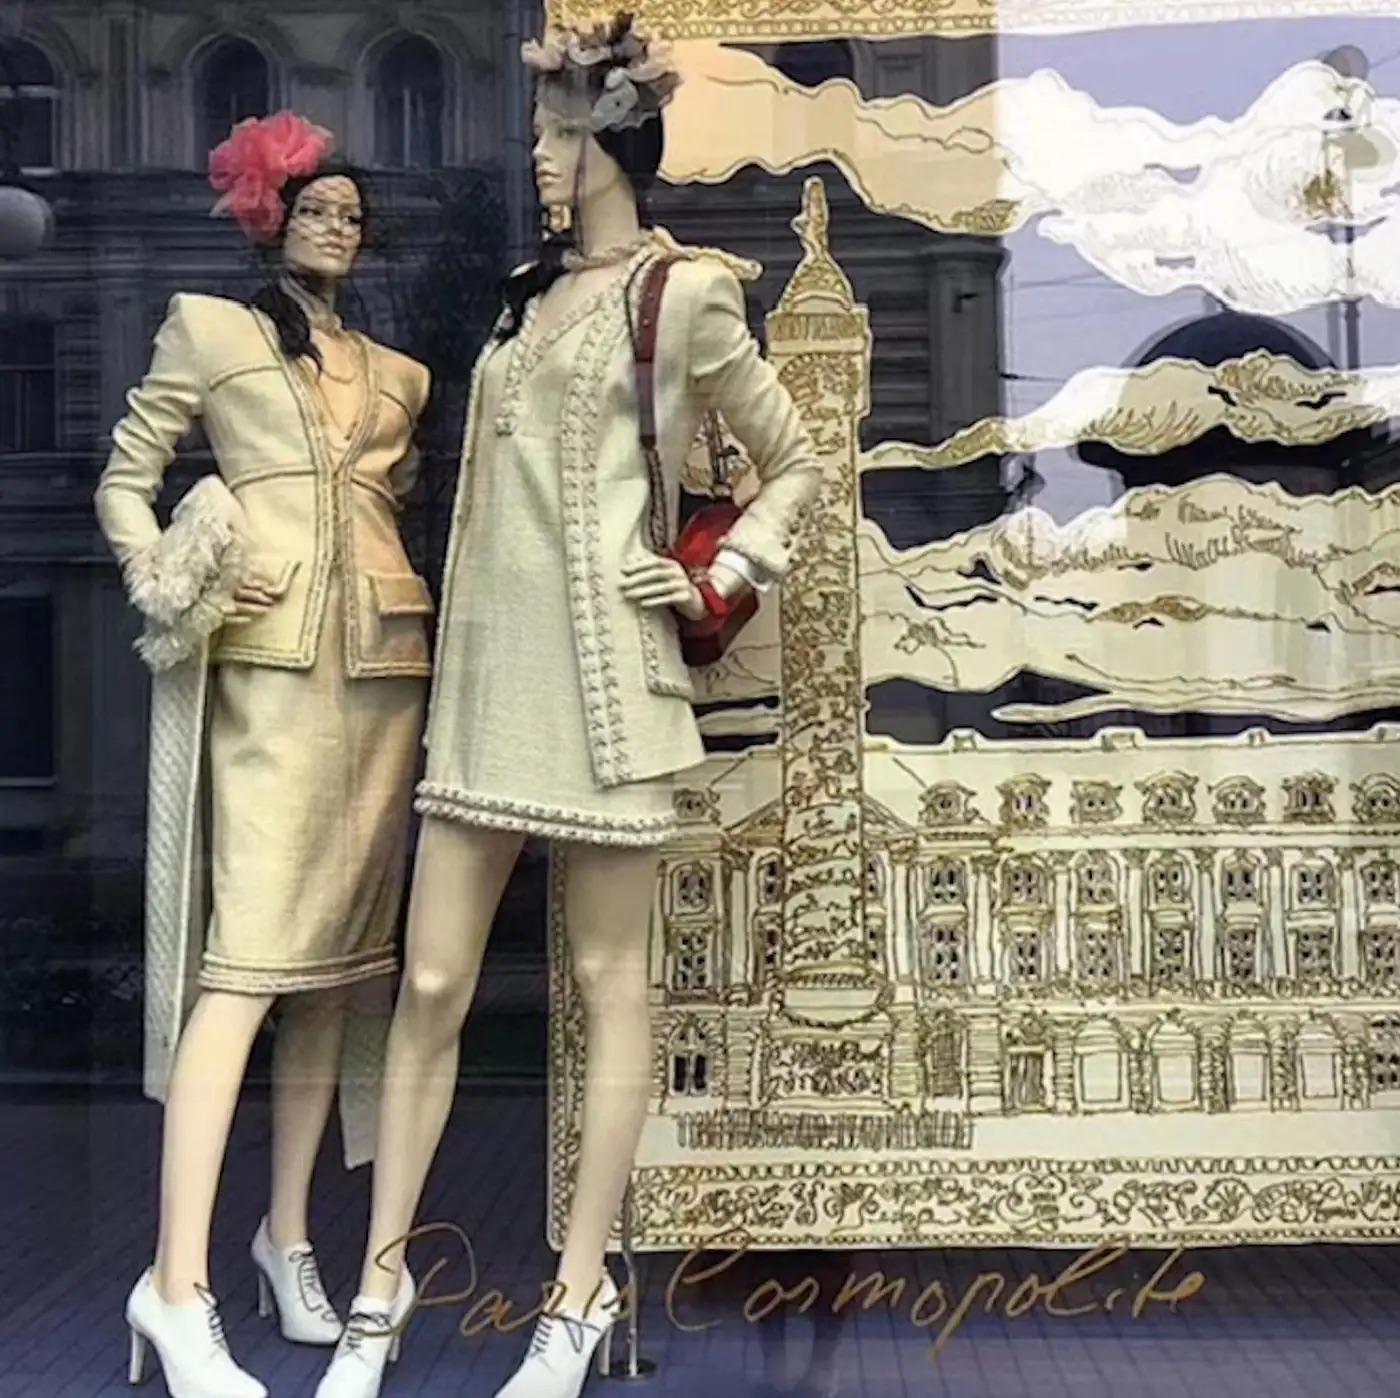 Le tailleur jupe écru le plus recherché de la collection Chanel 2017 Metiers D'Art Paris Cosmopolite à l'hôtel Ritz. Les collections Metiers d'Art représentent le plus haut niveau de savoir-faire en matière de prêt-à-porter avant la Haute Couture et